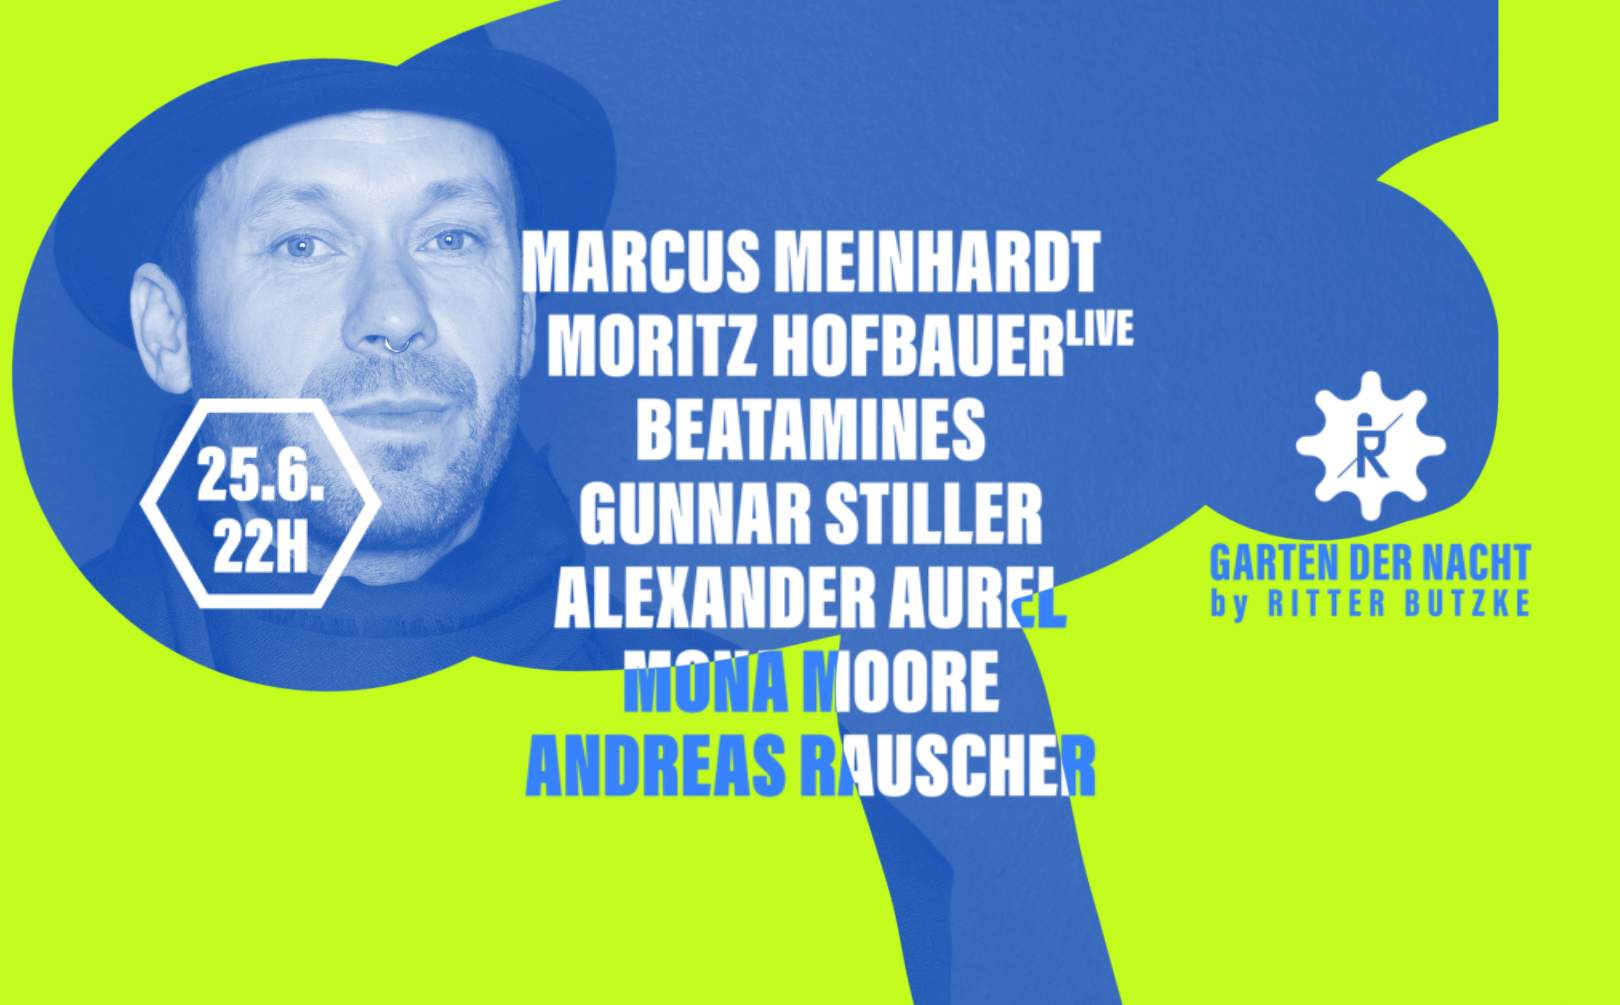 Marcus Meinhardt & Moritz Hofbauer (live) at Garten der Nacht - Página frontal